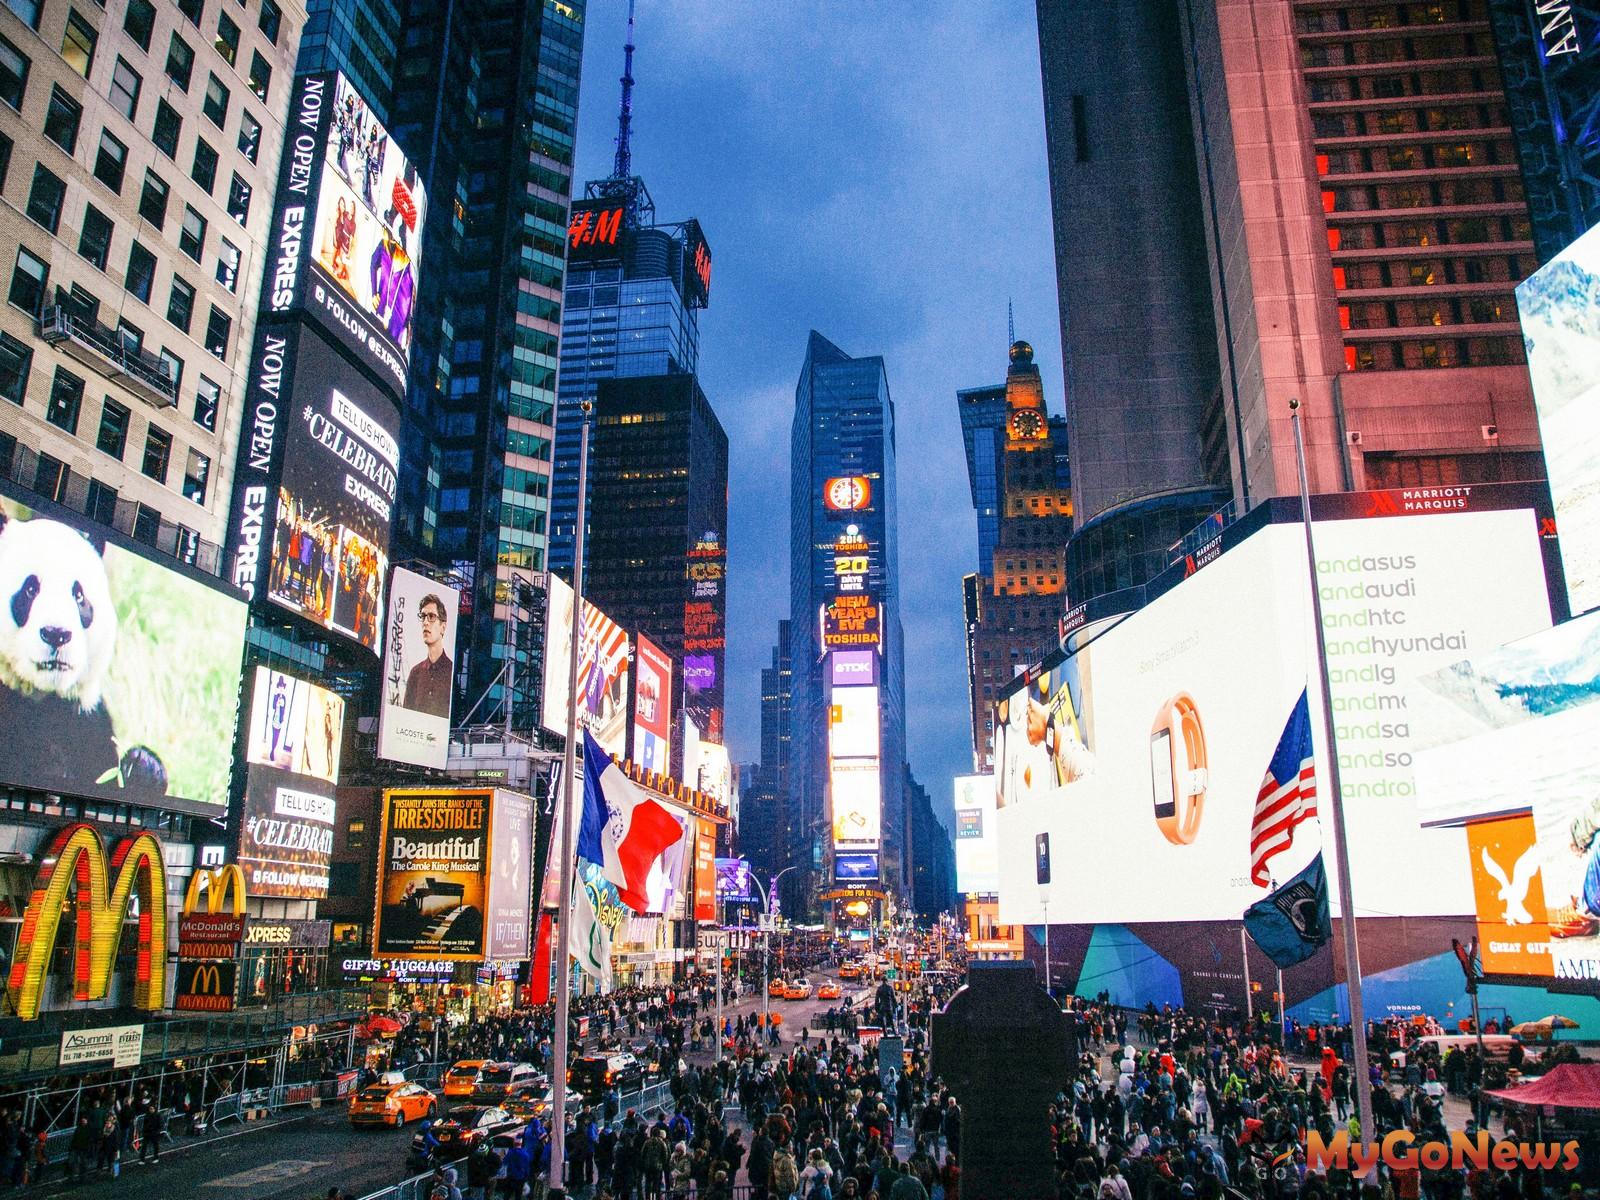 美國紐約曼哈頓是世界上最繁華的商業和文化中心之一，整體評量，台中水湳經貿園區與紐約曼哈頓可以歸納出10項相同的發展模式。(圖片來源/pxhere) MyGoNews房地產新聞 市場快訊